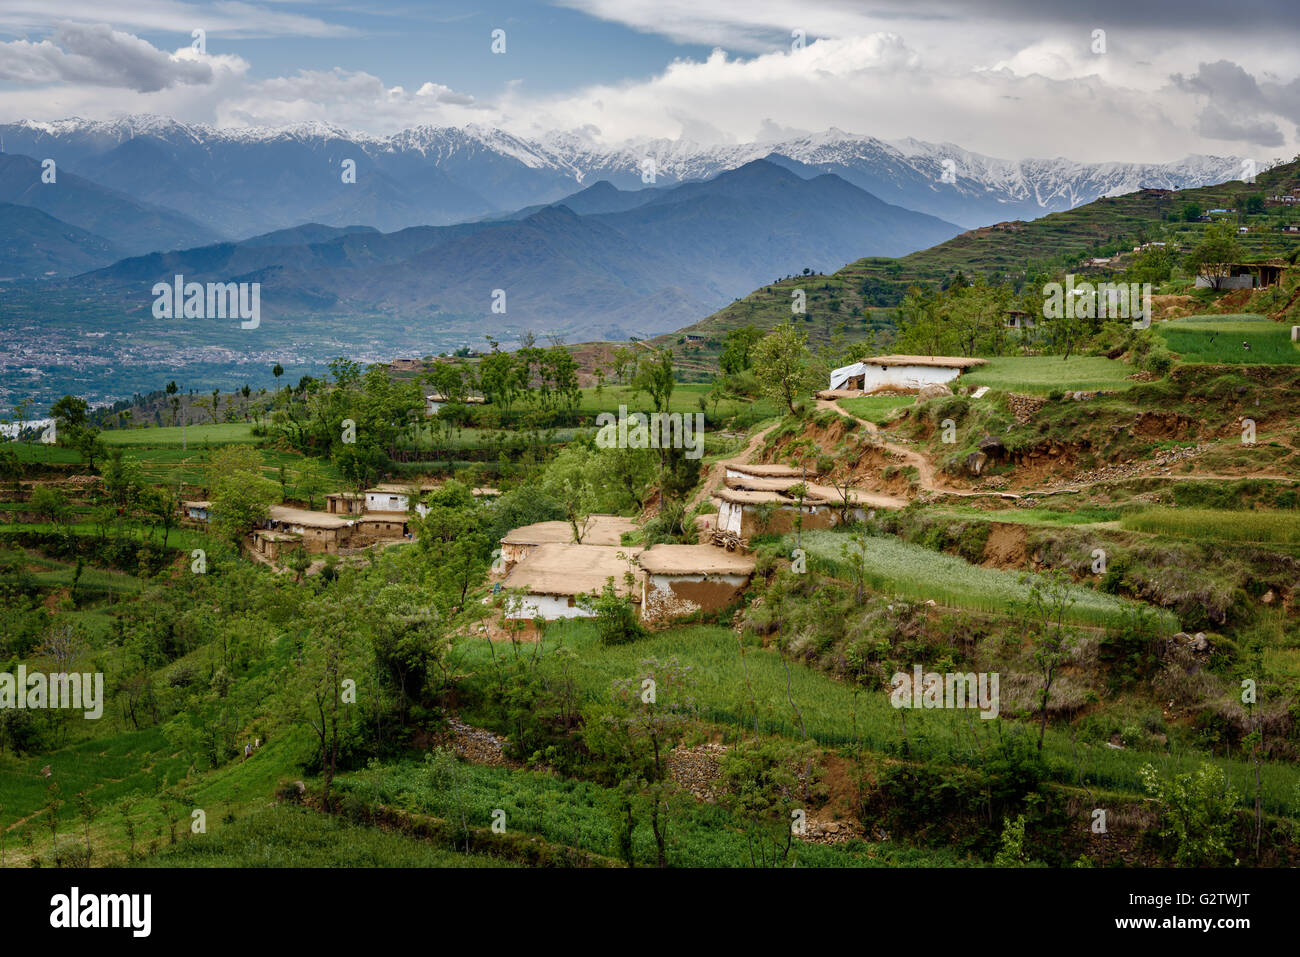 Vallée de Swat au Pakistan pleine de forêts luxuriantes et les cimes enneigées qui ajoute à son attrait naturel. Banque D'Images